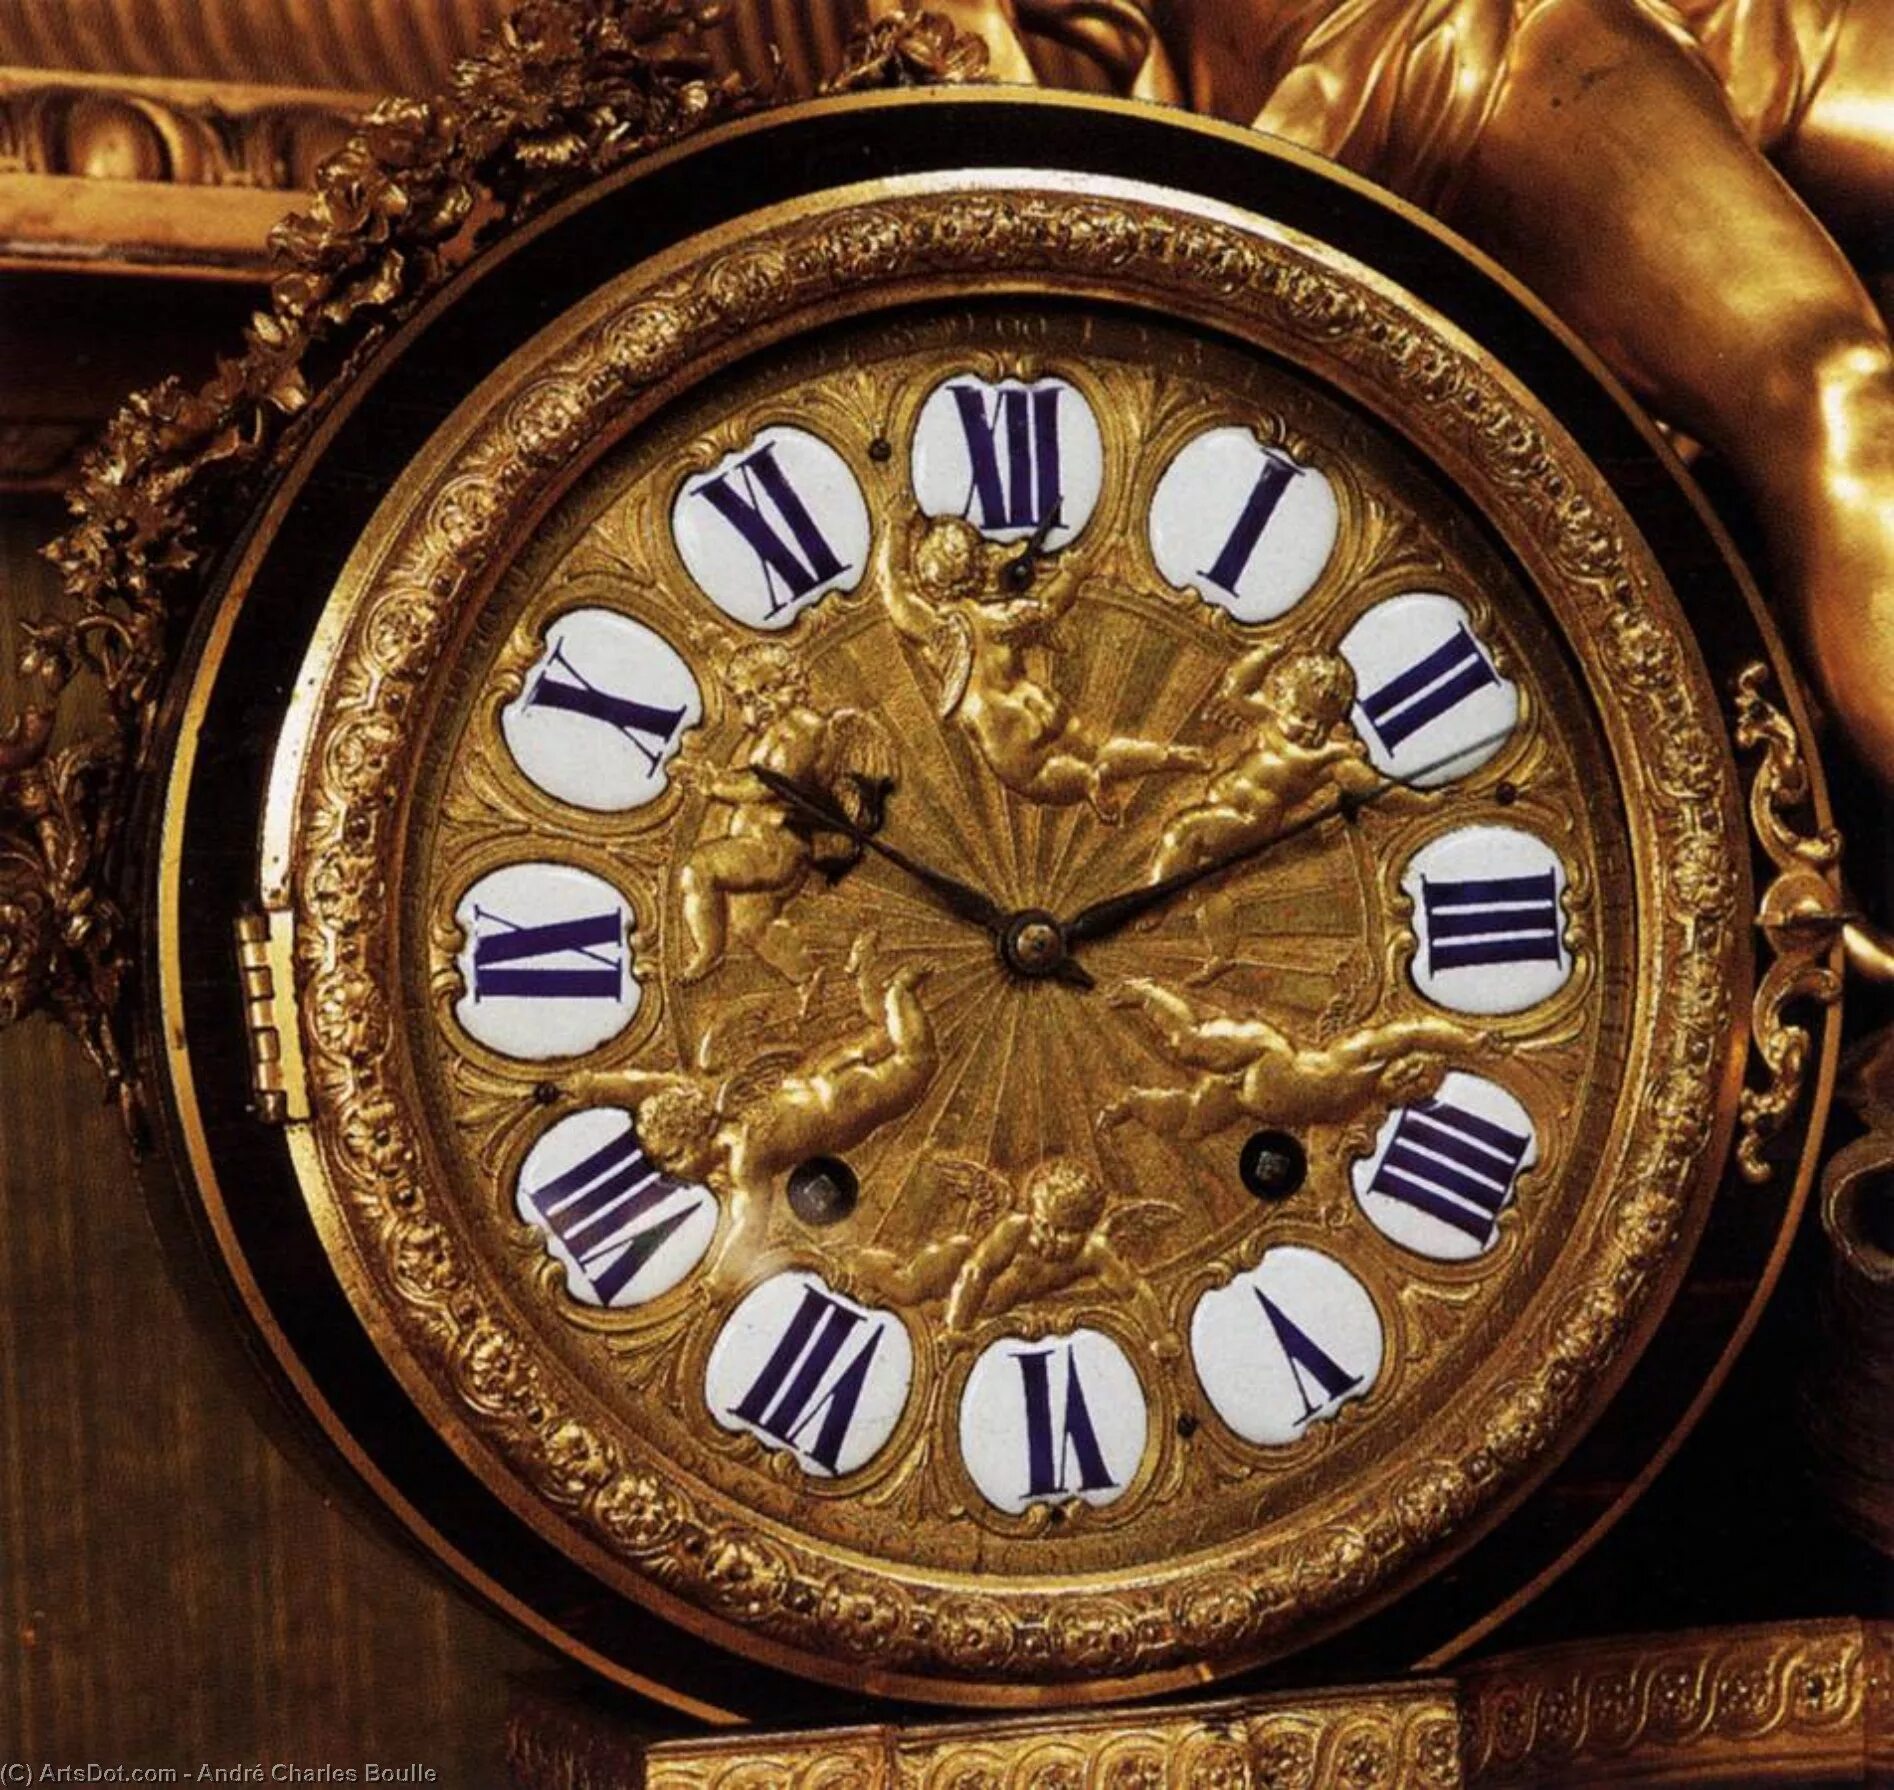 André-Charles Boulle, часы. Louis XIV часы. Старинные часы. Антикварные часы.